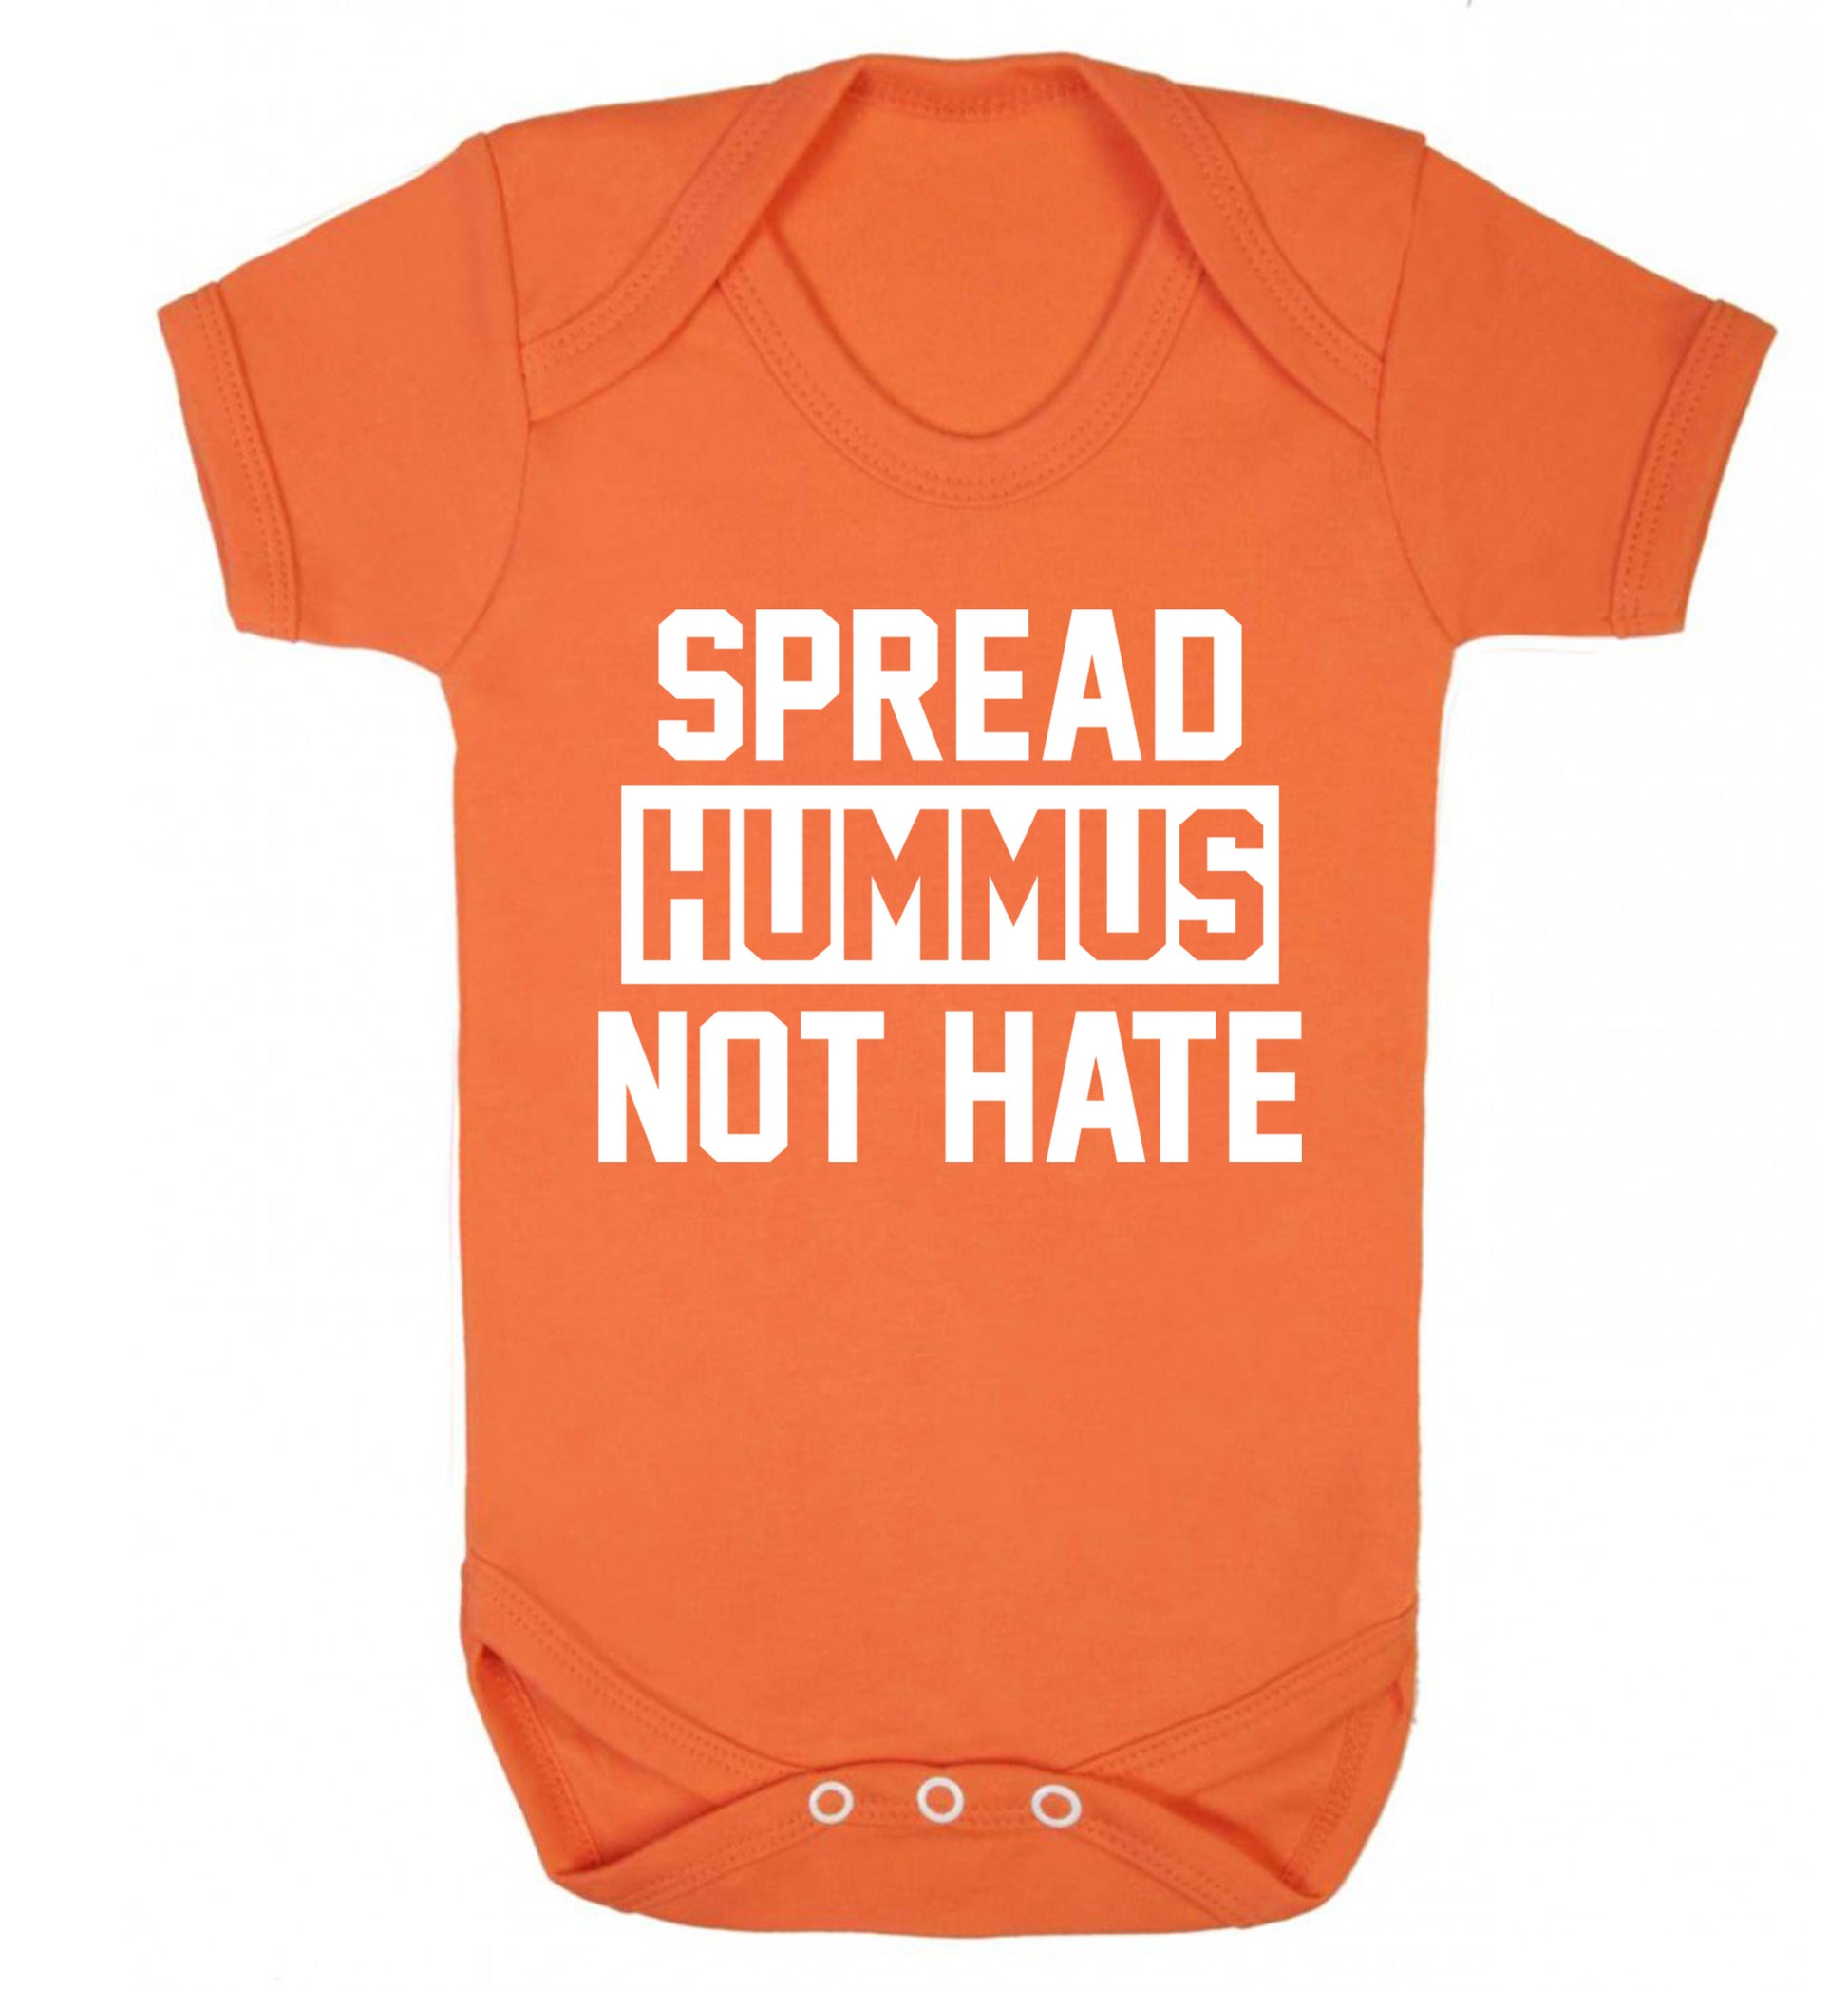 Spread hummus not hate Baby Vest orange 18-24 months